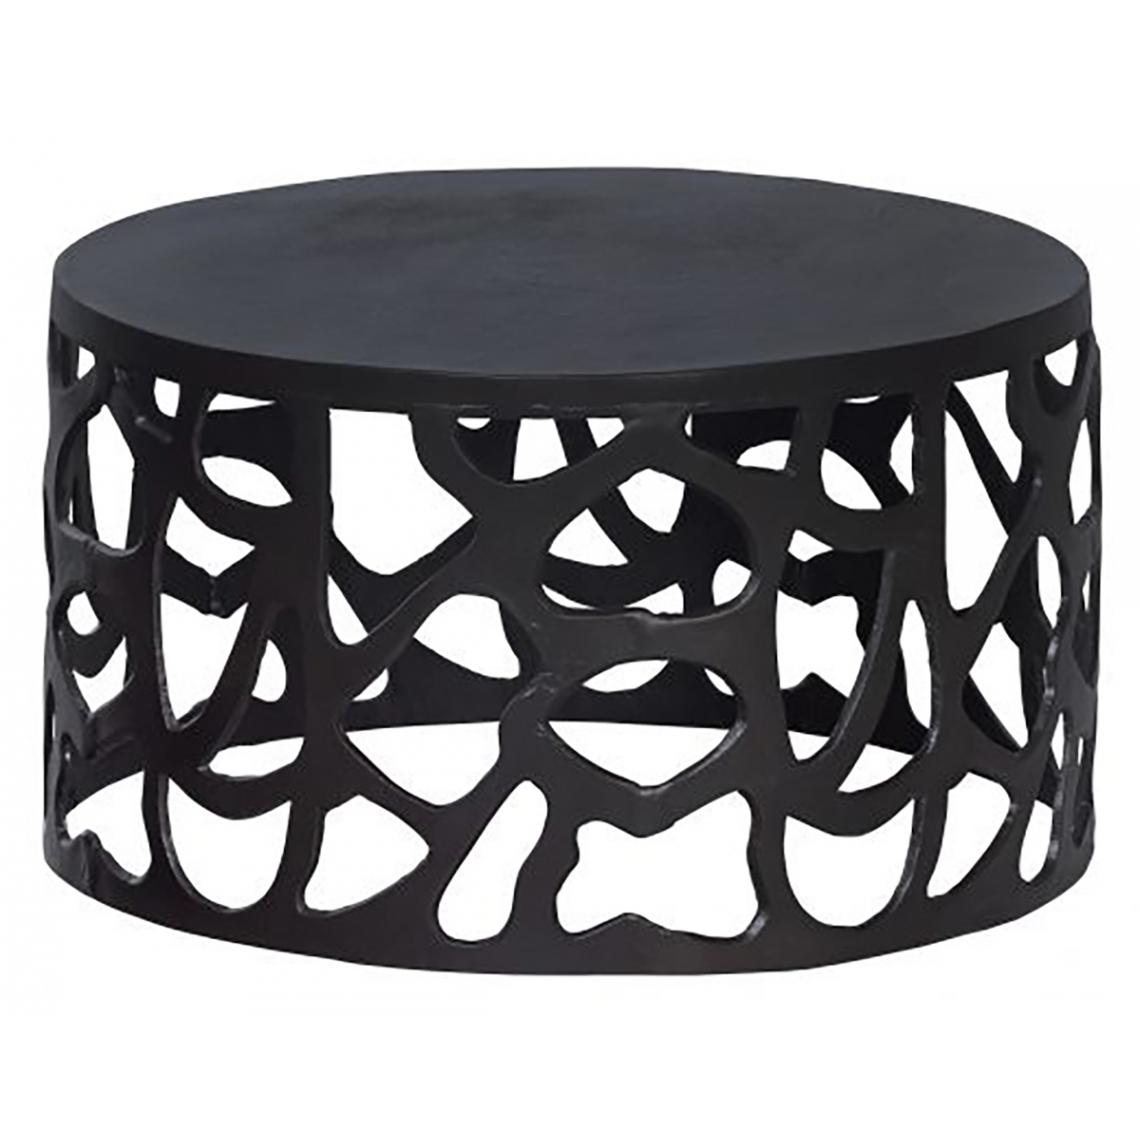 Pegane - Table basse en aluminium coloris noir mat - Hauteur 37 cm x Ø 64 cm - Tables basses